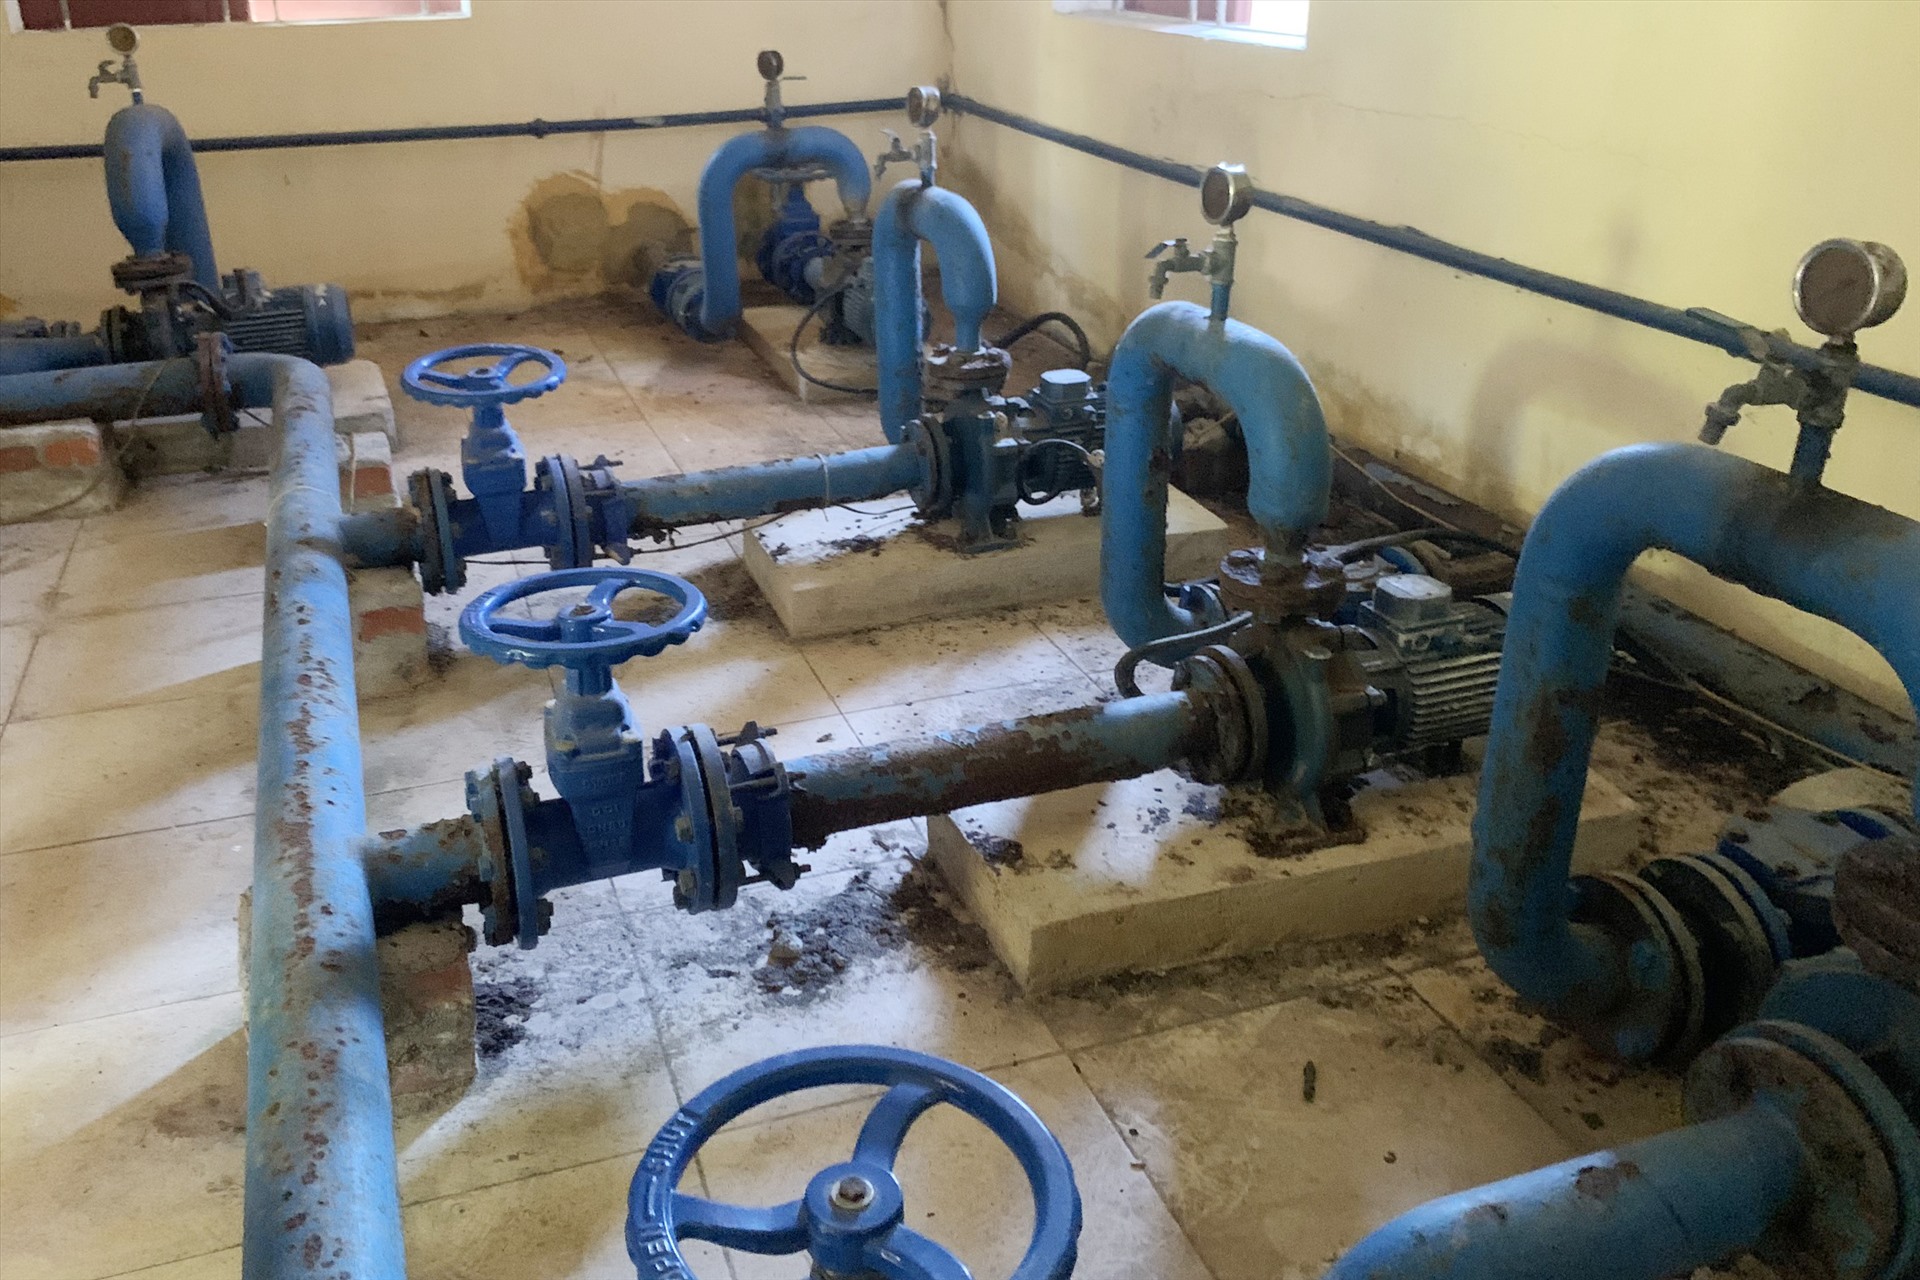 Nhà máy nước sạch Quang Thọ hiện 3/4 máy bơm đã hỏng không có kinh phí sửa chữa. Ảnh: Trần Tuấn.